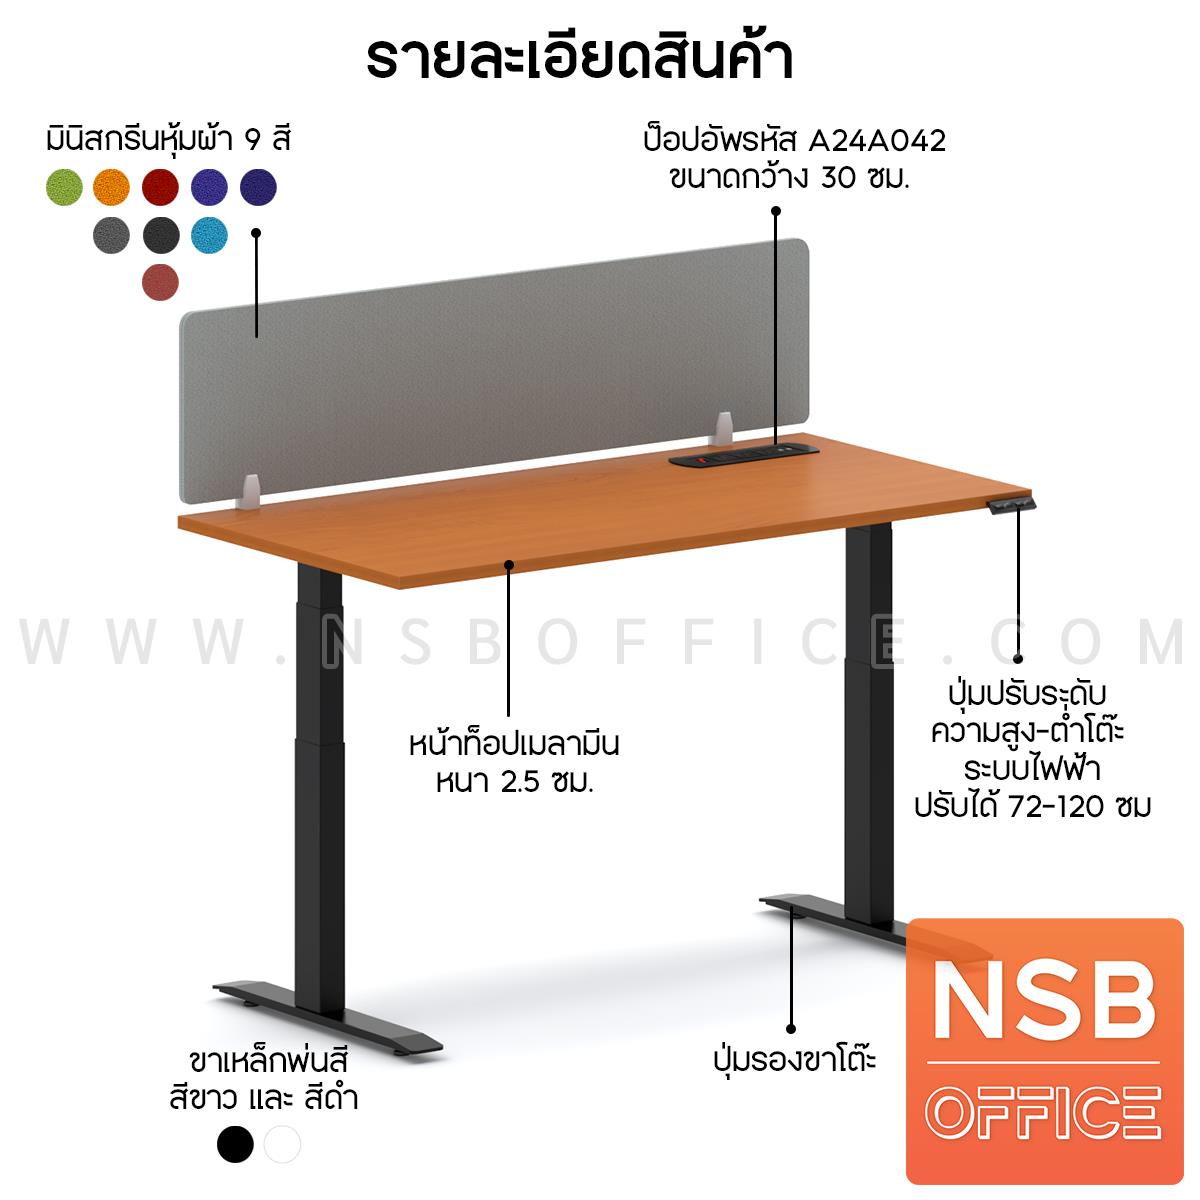 โต๊ะทำงาน Sit 2 Stand ระบบไฟฟ้า  รุ่น Flaxen 2 (แฟลกซ์เซ็น 2) ขนาด 150W, 180W cm.  มินิสกรีนผ้า พร้อมป็อปอัพรุ่น A24A042